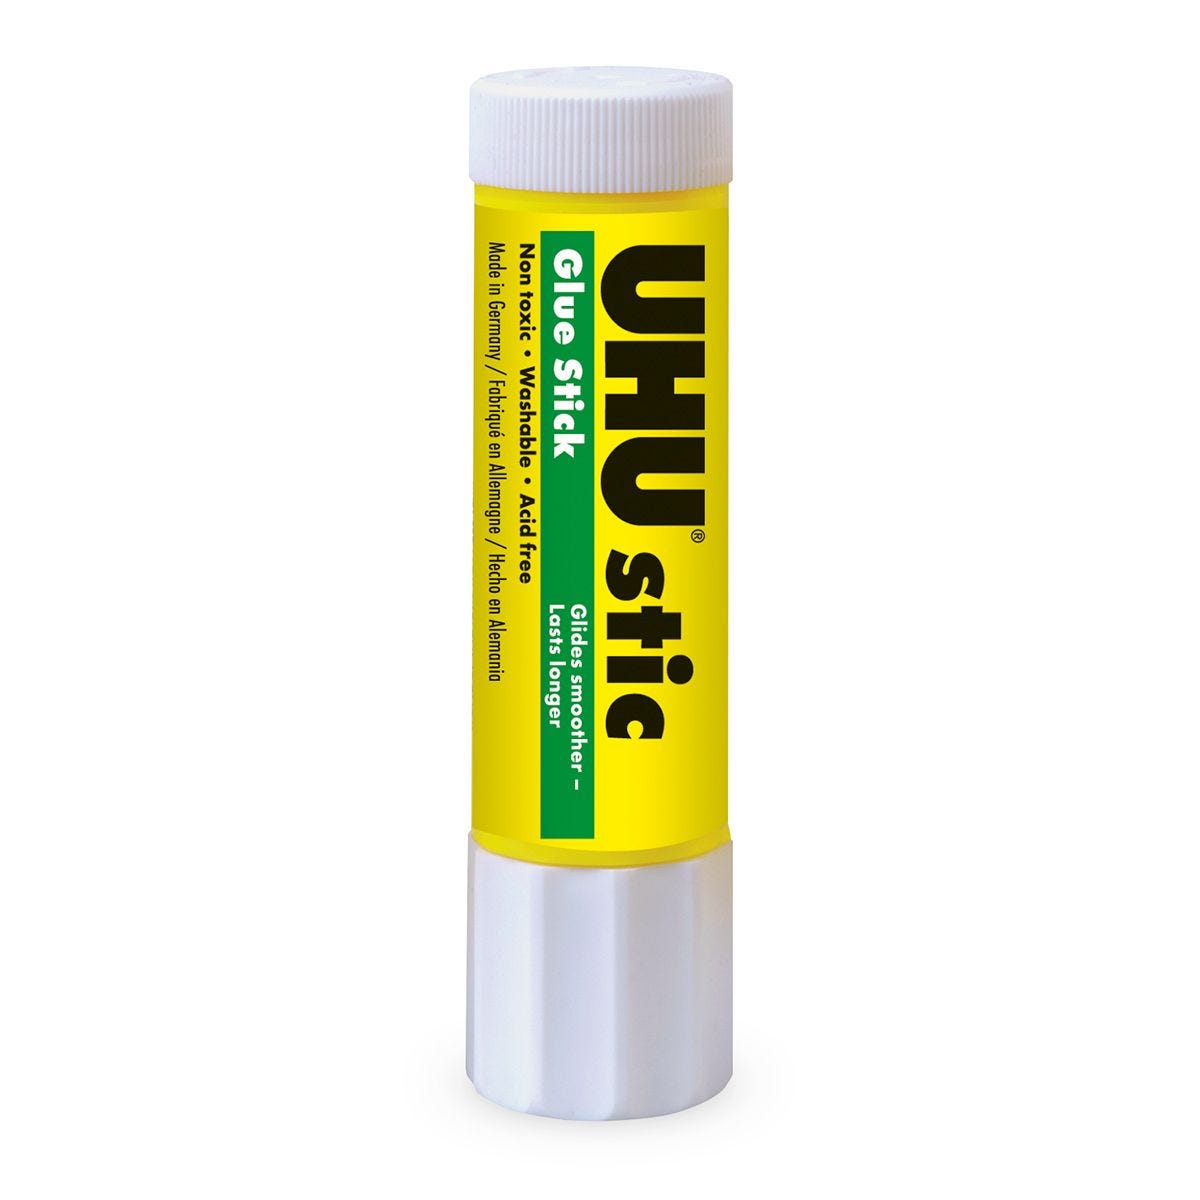 Stic Permanent Glue Stick, 0.74 oz, Dries Clear